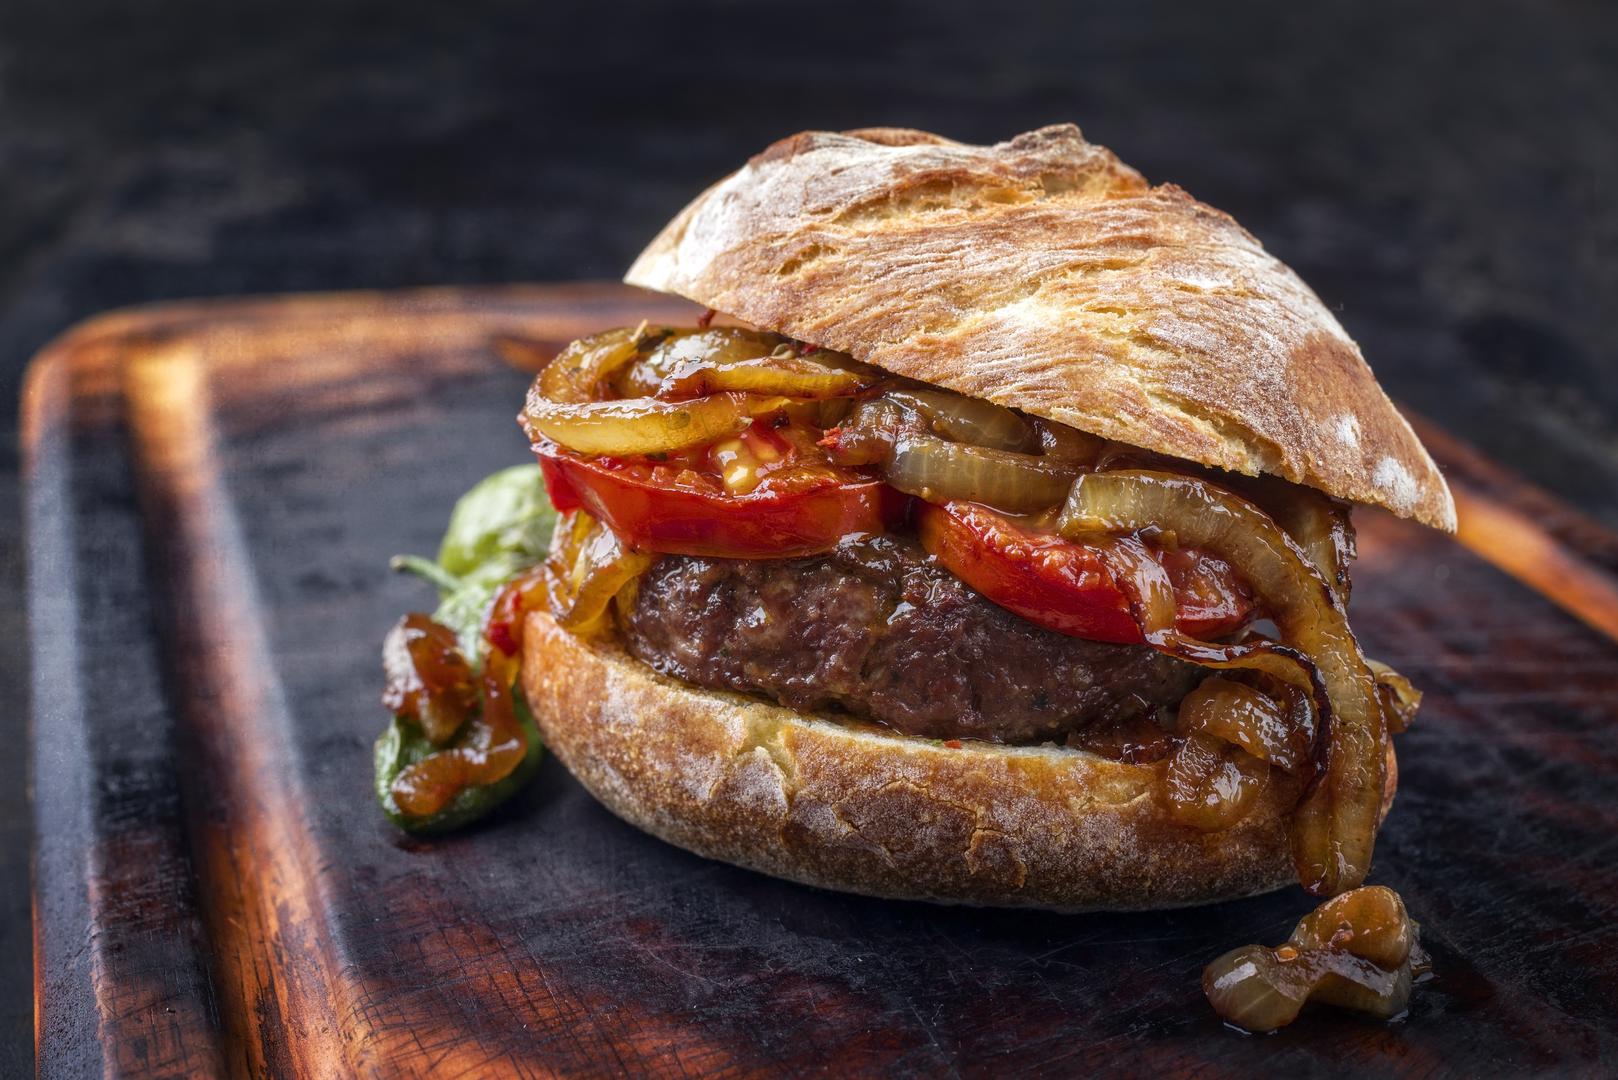 Lav (23. srpnja - 22. kolovoza): Wagyu burger - Lavovi vole biti u centru pažnje. Rodriguez preporučuje luksuzni Wagyu burger s brieom i aiolijem s tartufima. ‘Ovaj burger odražava Lavovu kraljevsku prirodu i njihovu ljubav prema drami’, kaže ona.